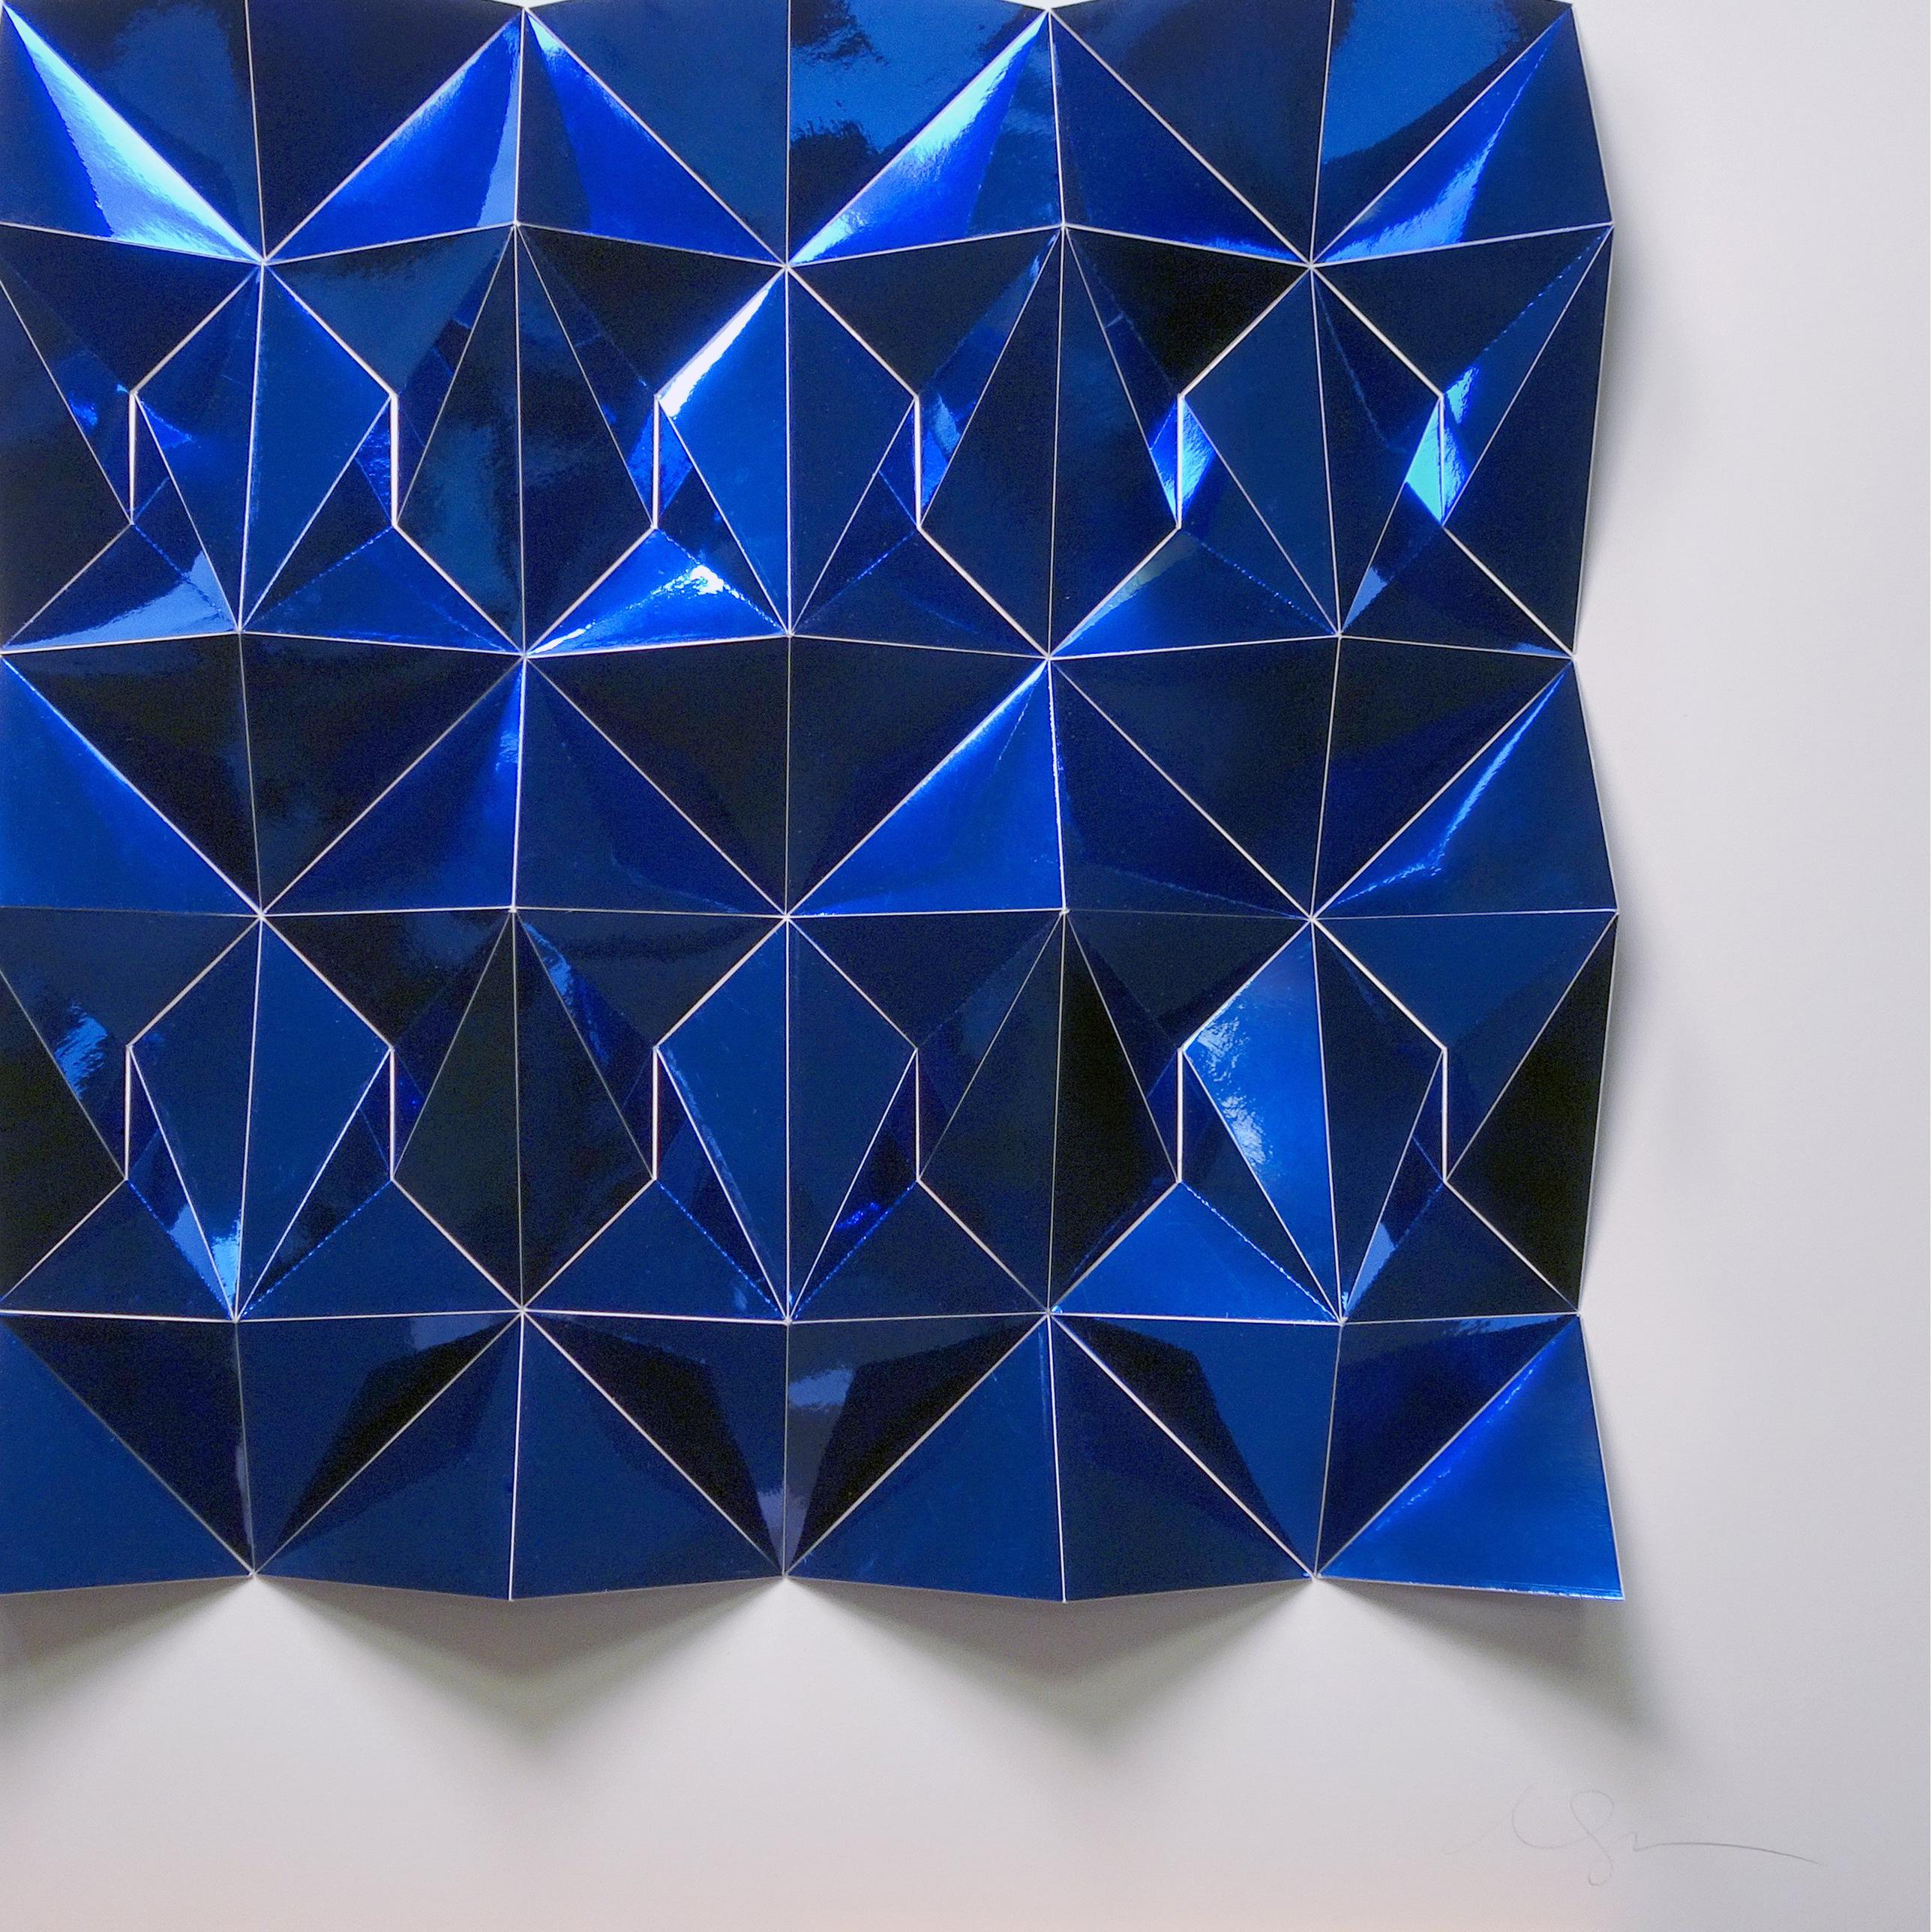 Ara 377 in Blau (Grau), Abstract Sculpture, von Matt Shlian